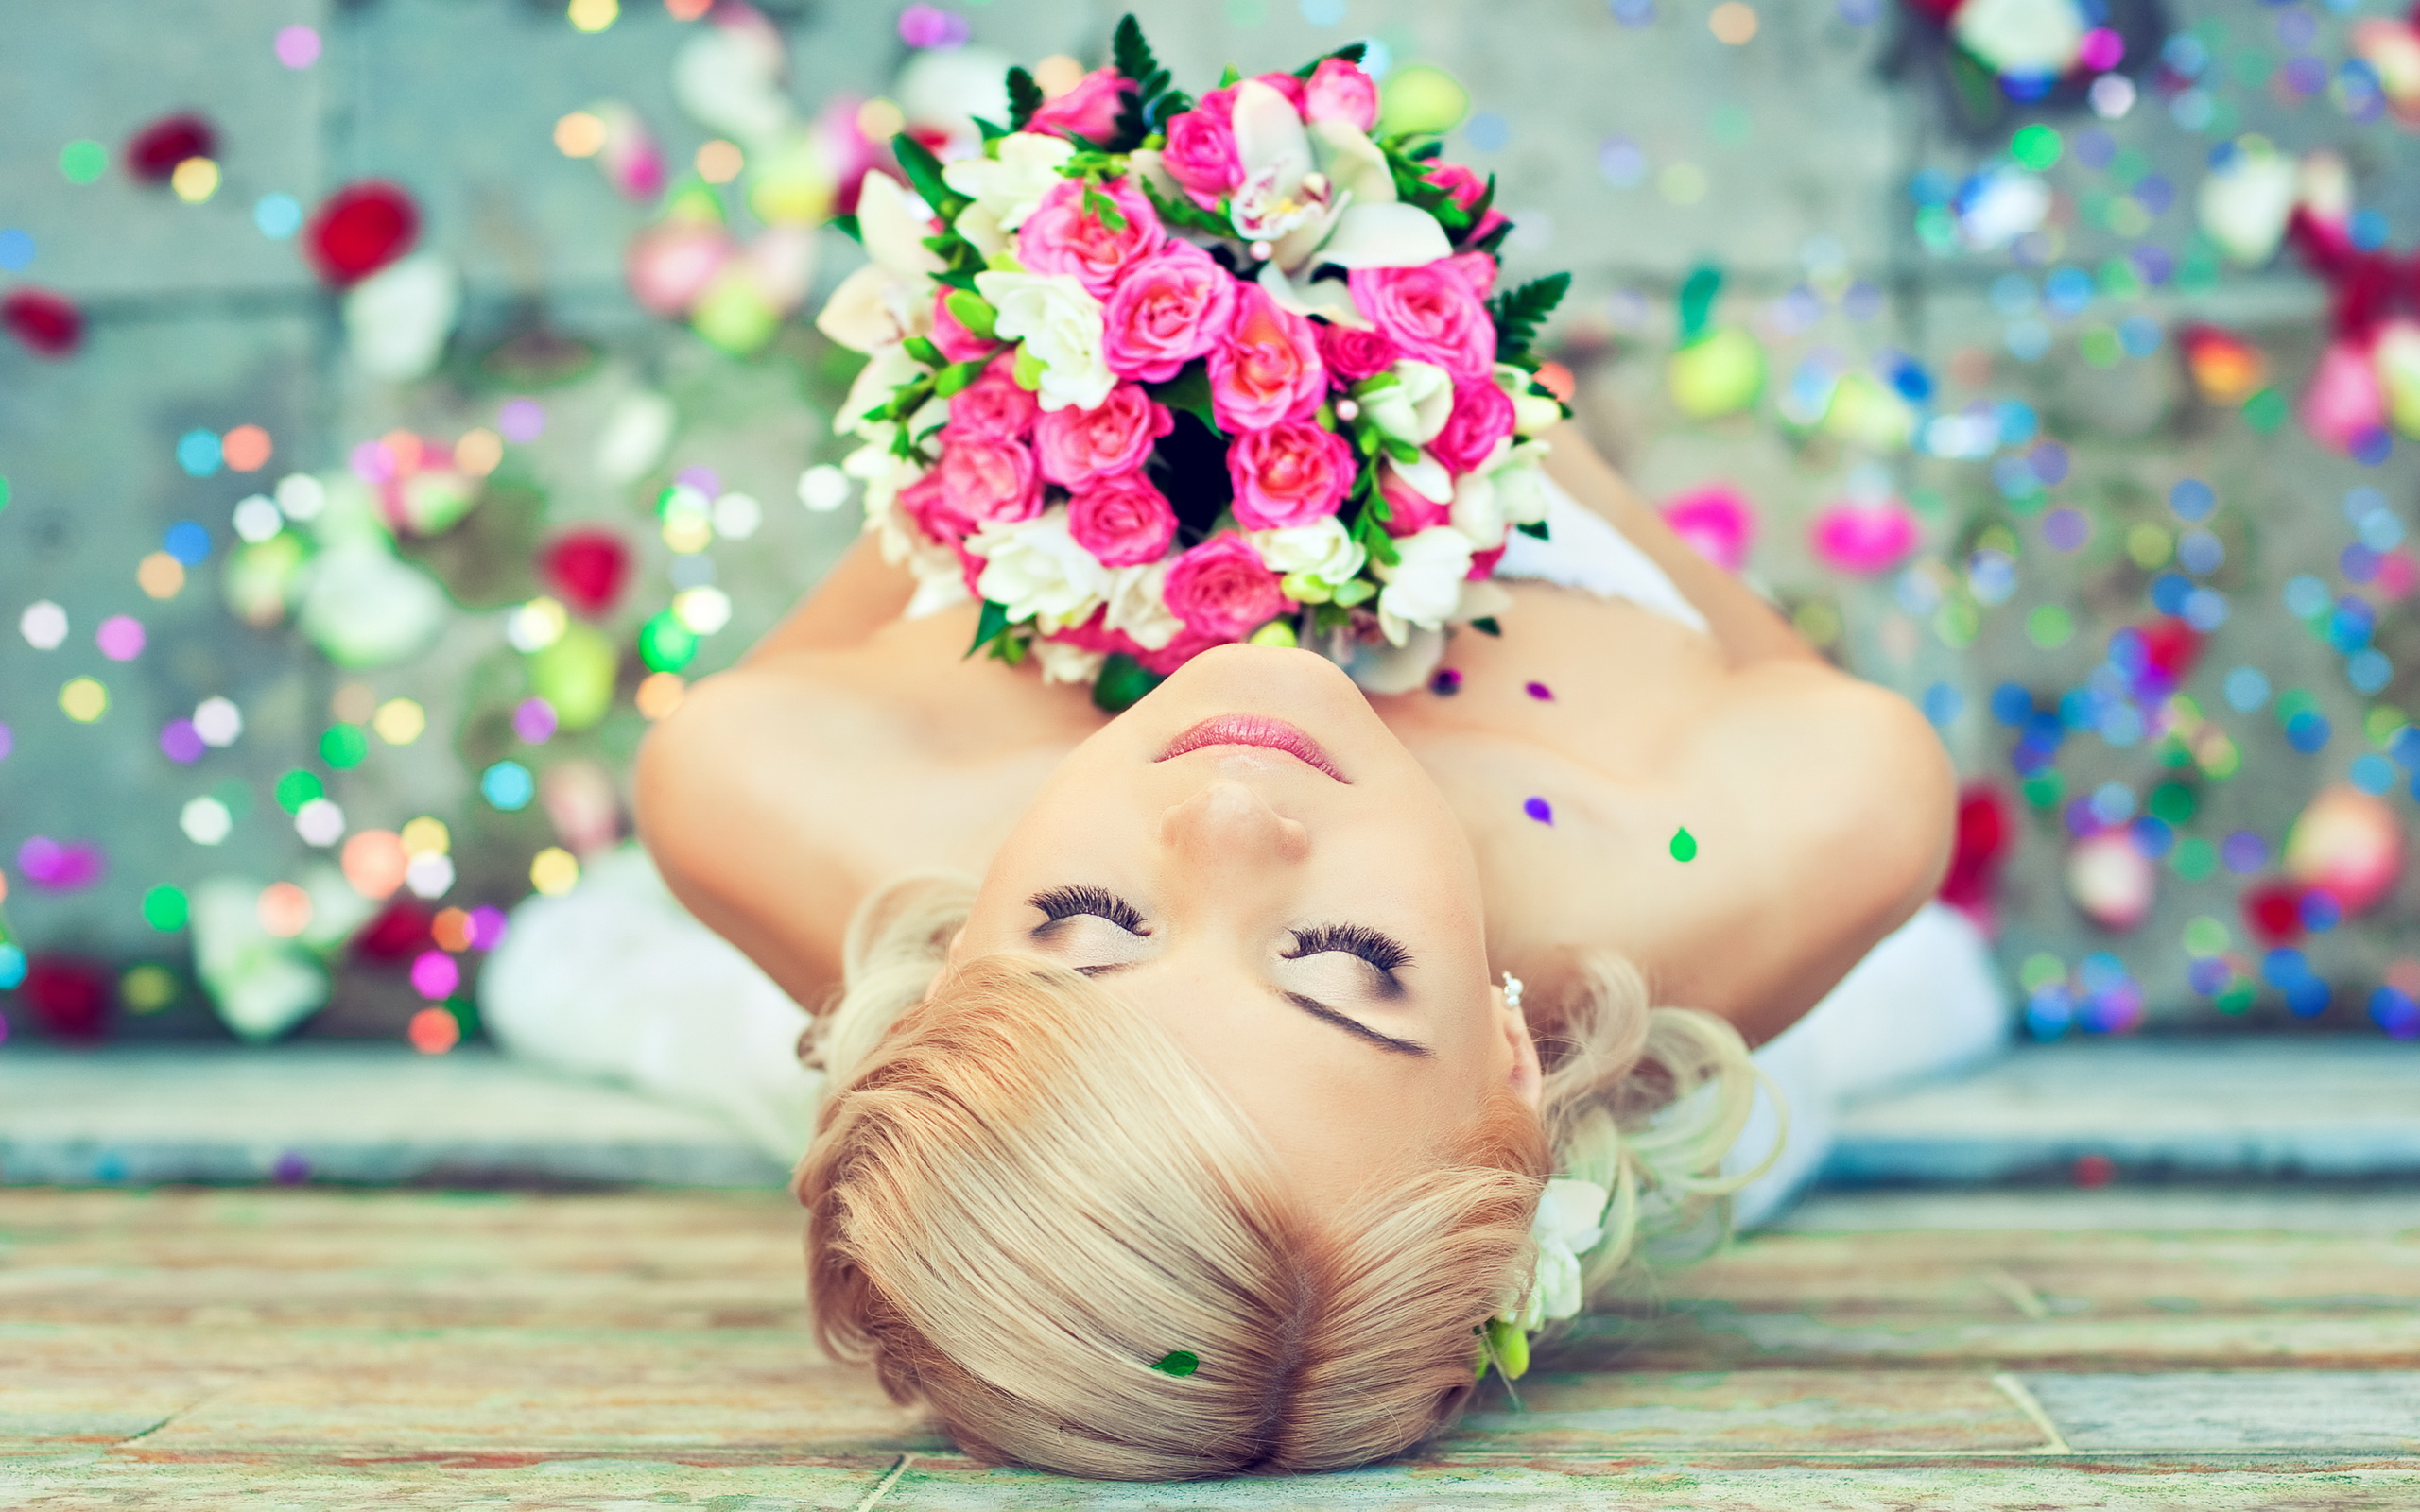 women, bride, bouquet, flower, mood